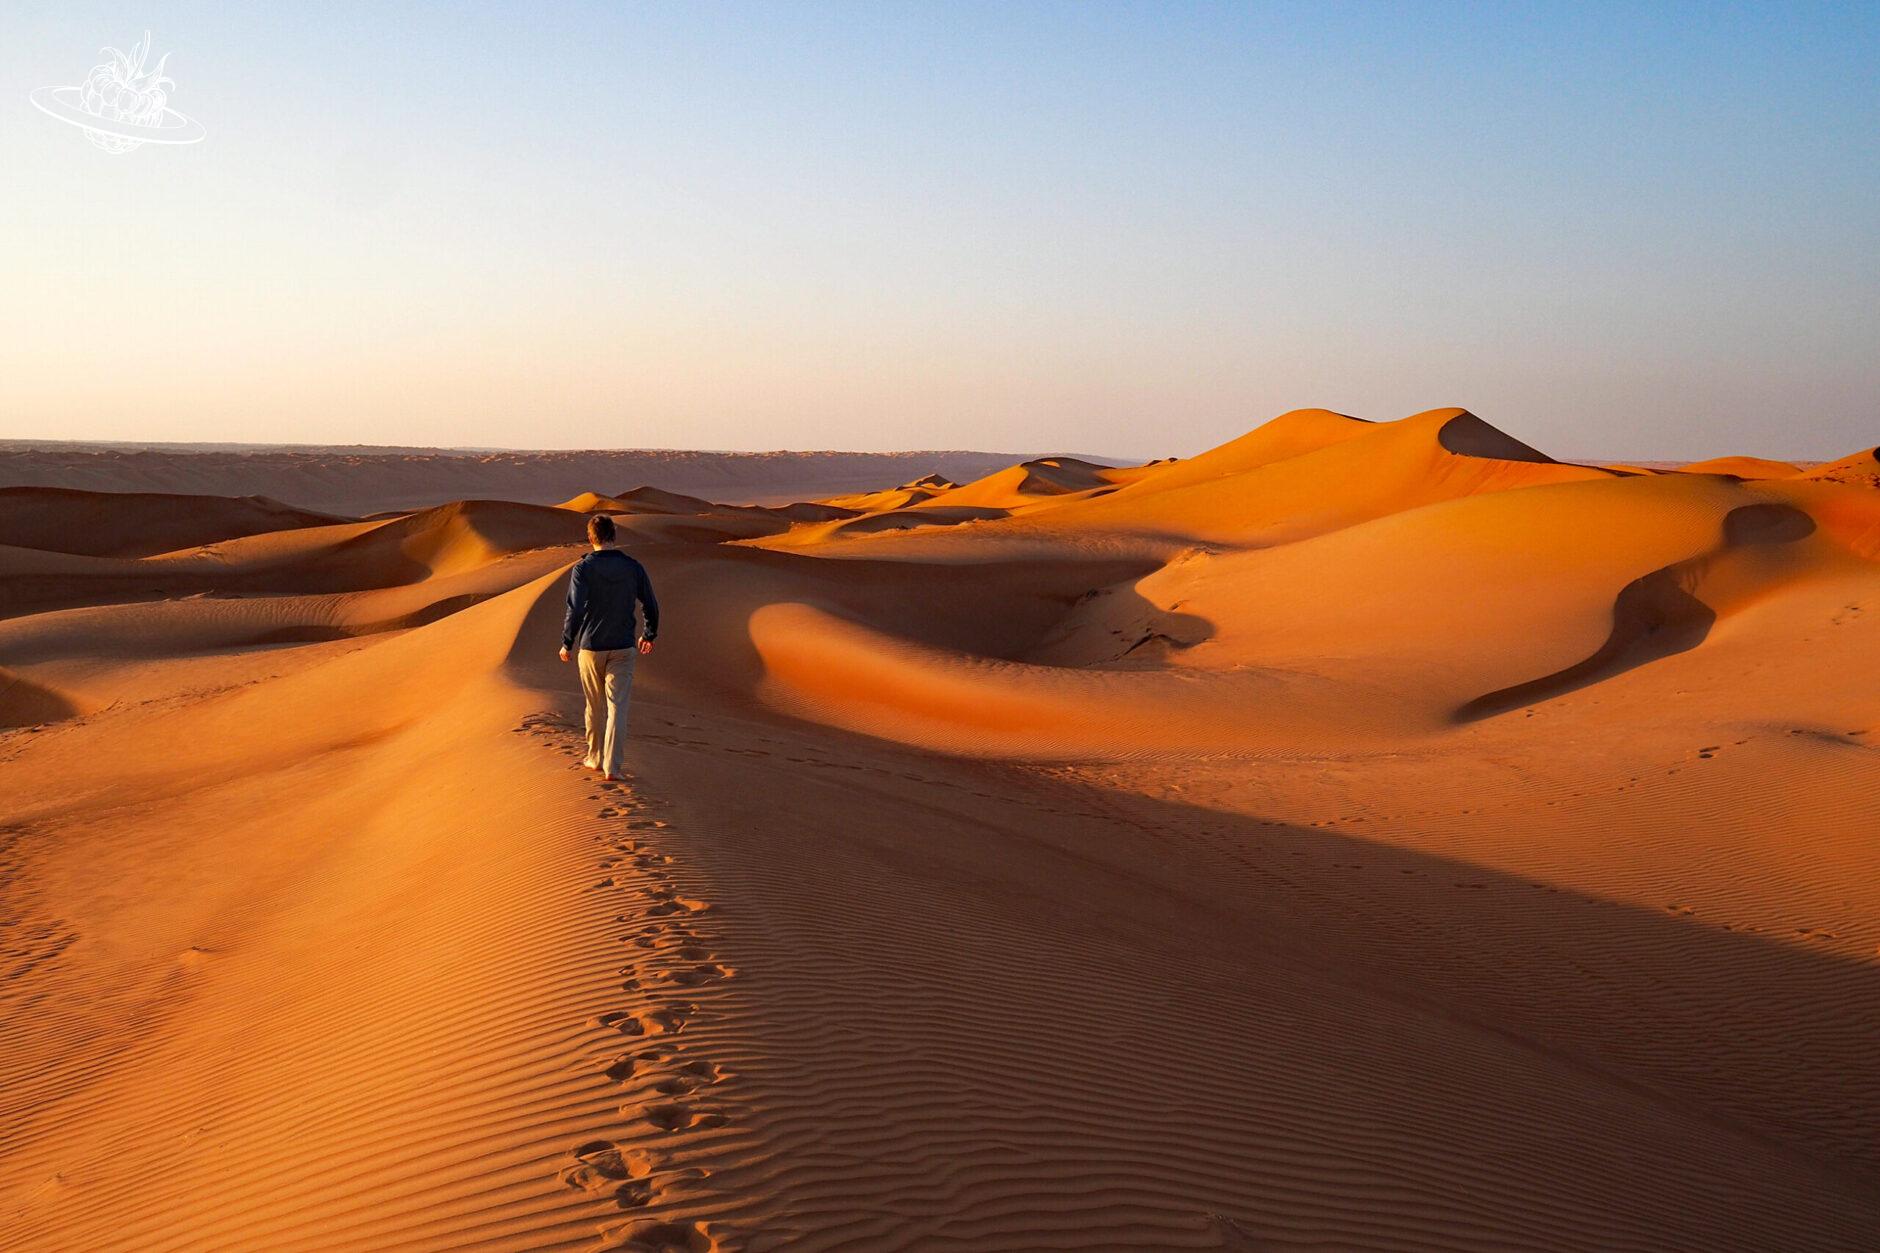 Mann in der Wüste am laufen